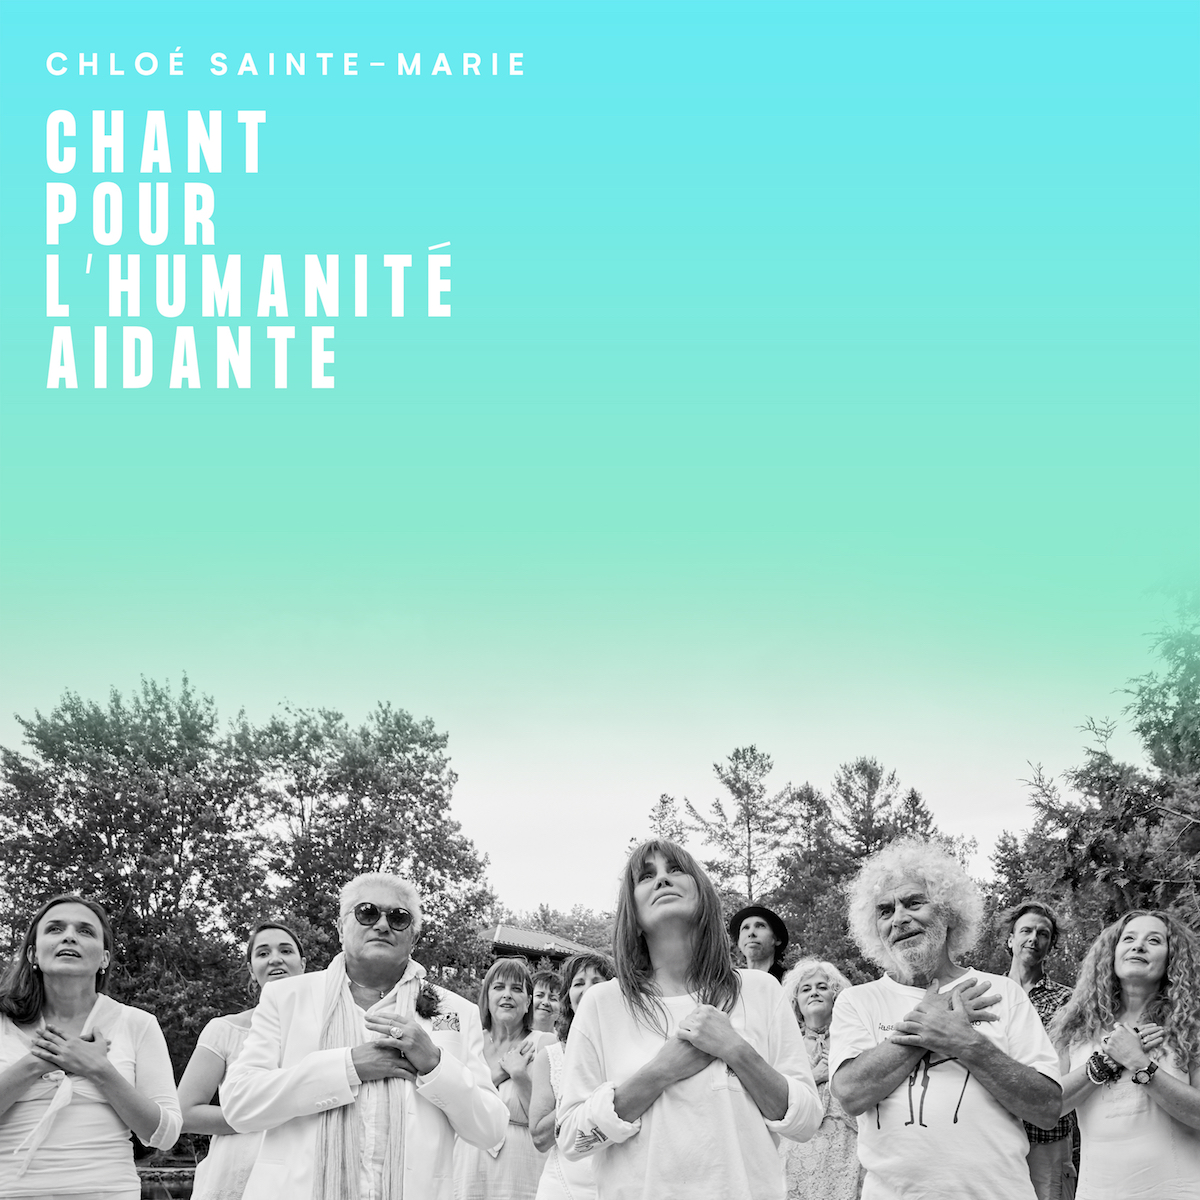 CHLOÉ SAINTE-MARIE présente un vidéoclip pour les aidants naturels «Chant pour l'humanité aidante»